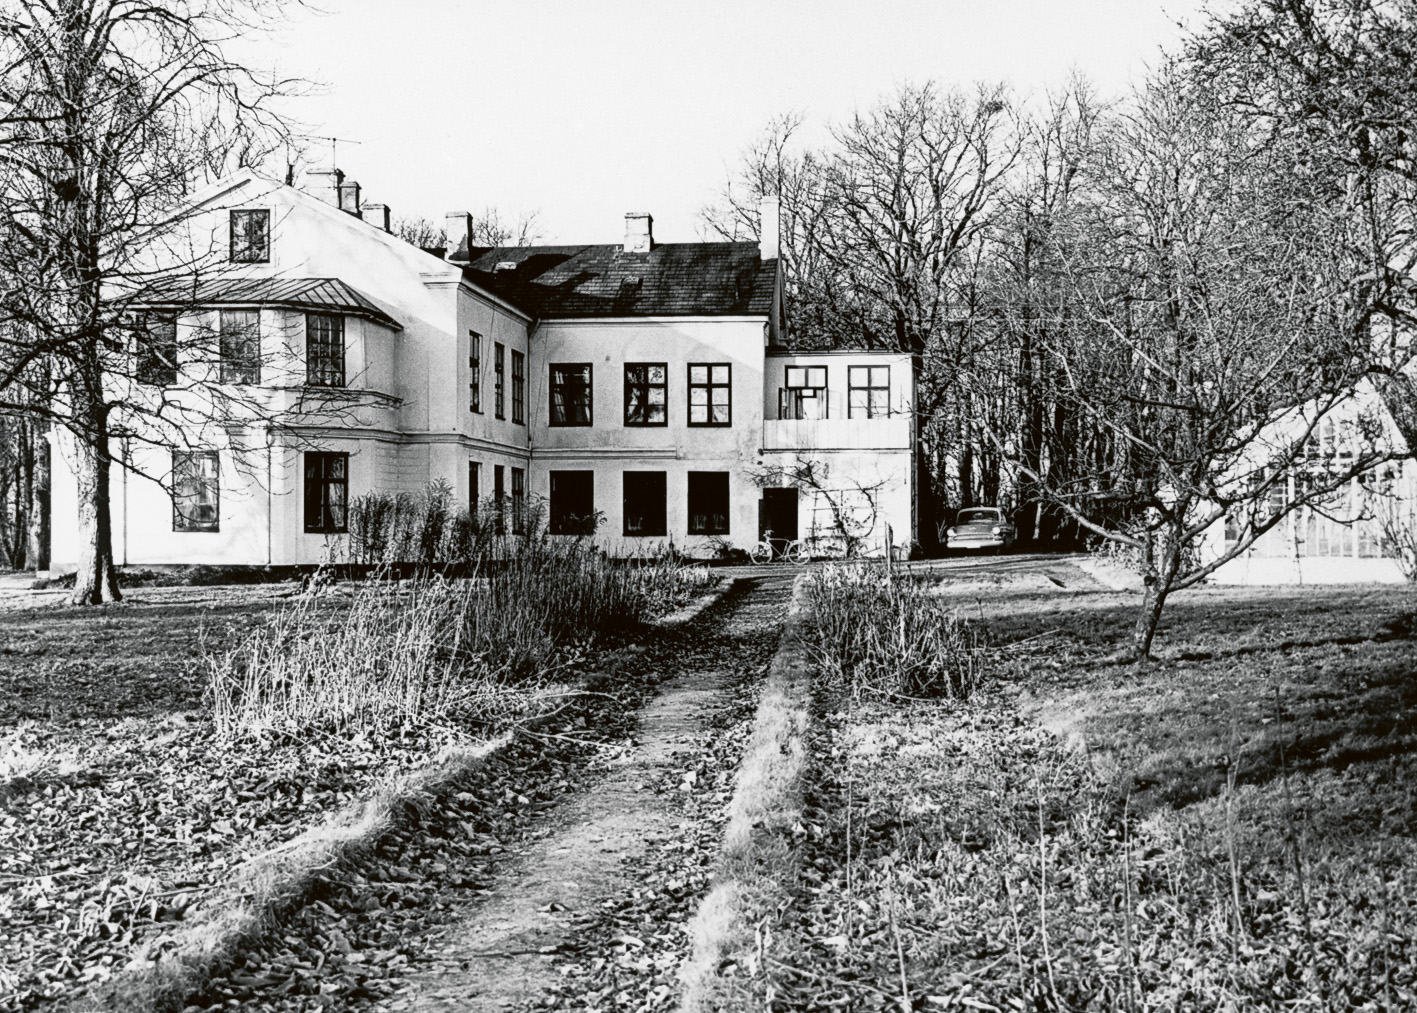 Närlunda (1). Den vita mangårdsbyggnaden, uppförd omkring 1850 revs 1965, låg på platsen för nuvarande bostadsområde